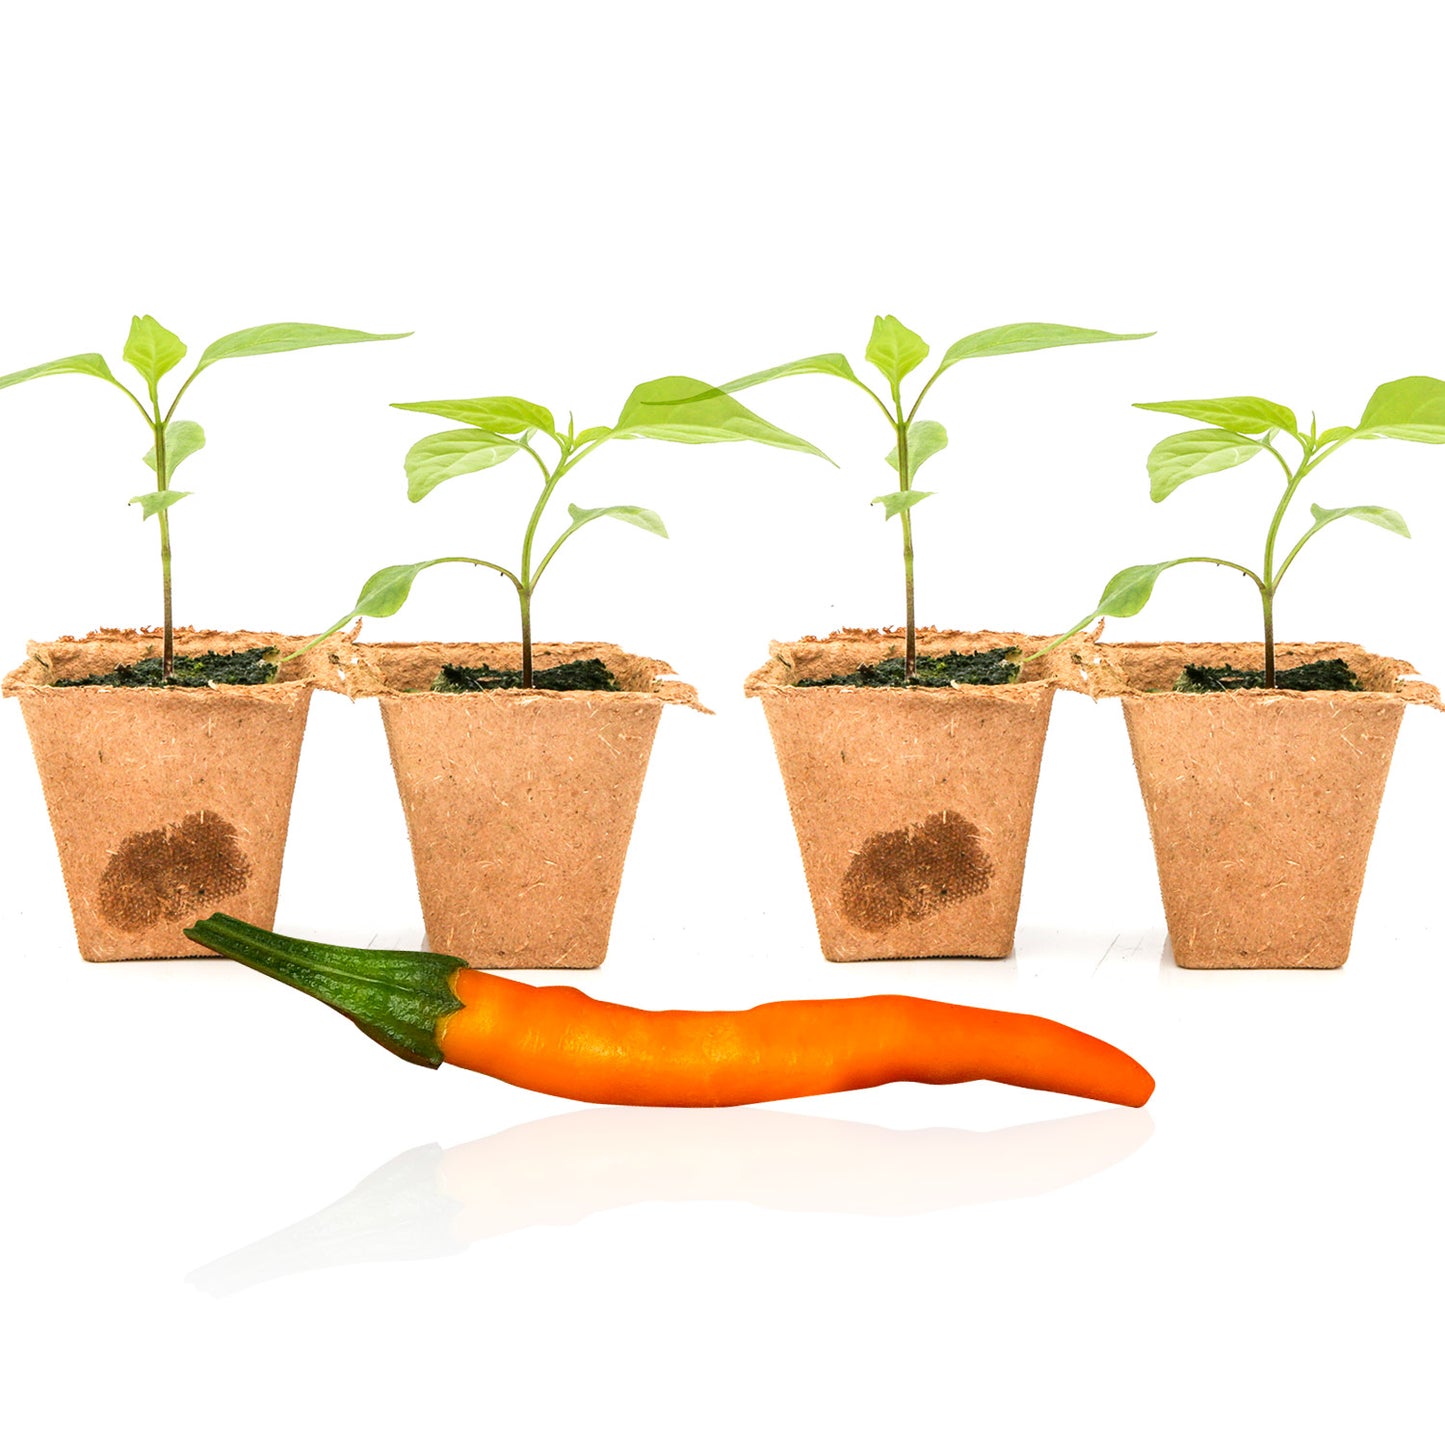 Pepper joe's Orange Cayenne seedlings for sale